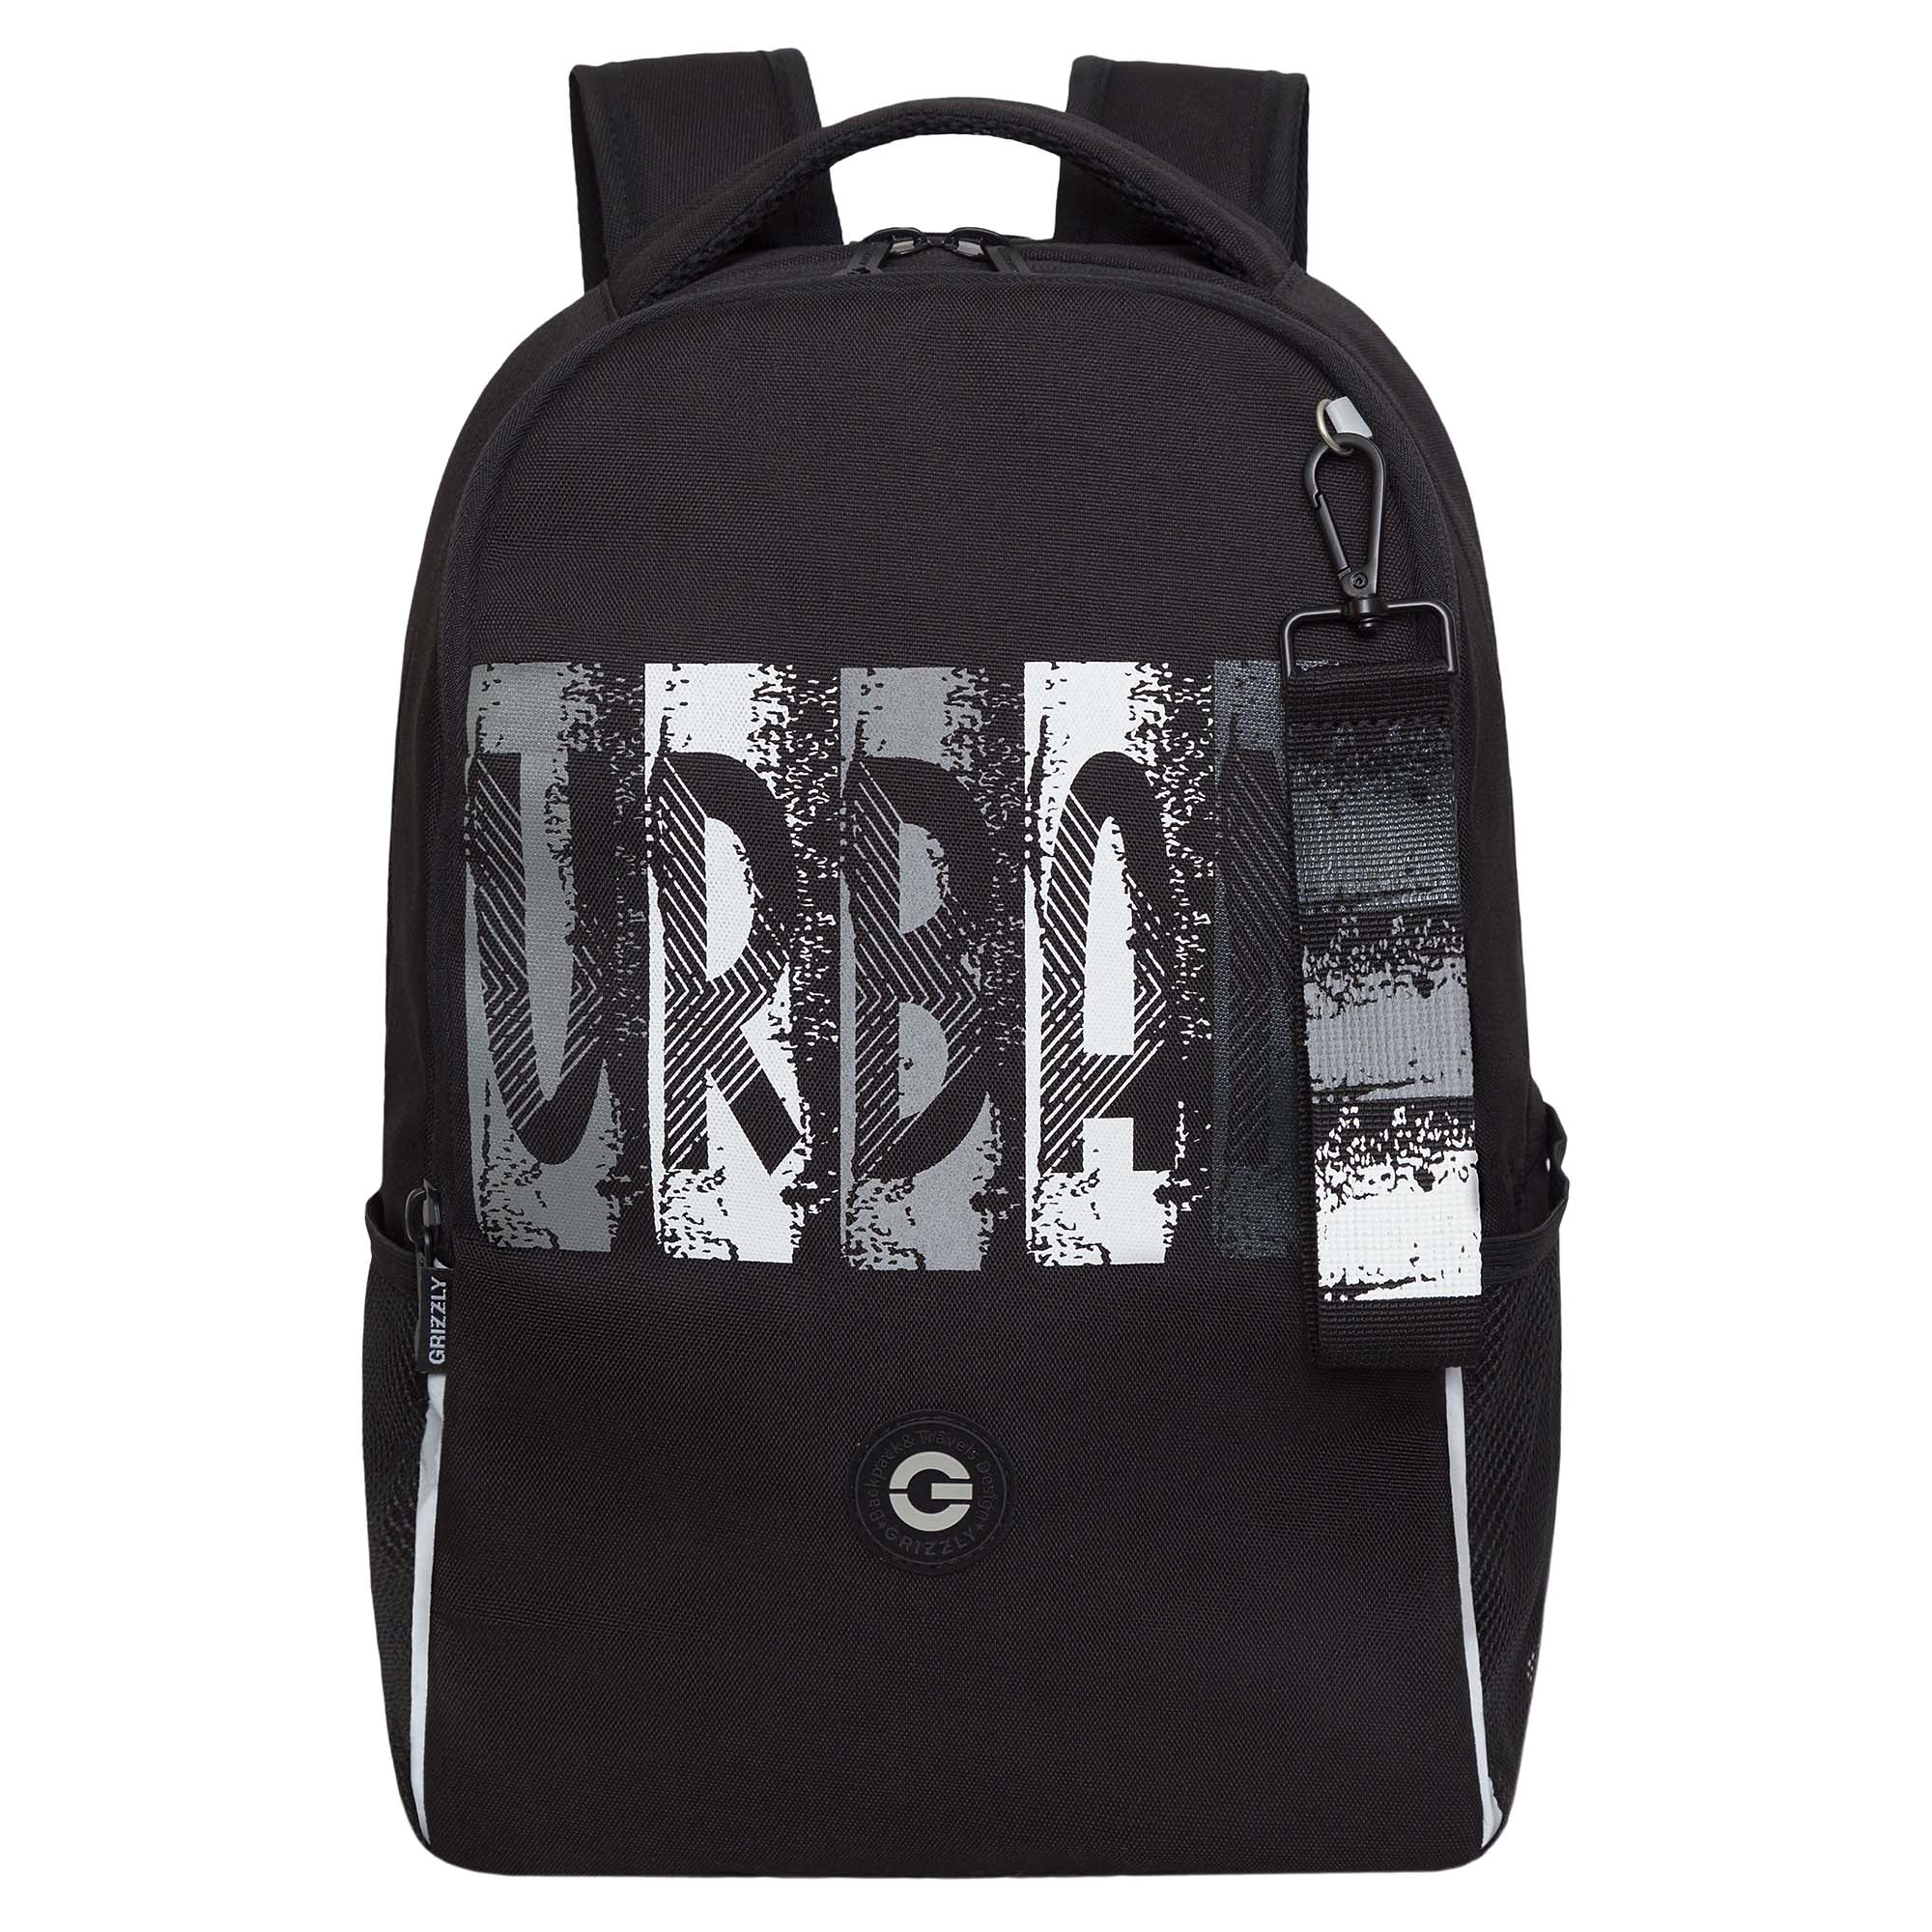 Рюкзак школьный GRIZZLY легкий с жесткой спинкой, 2 отделения, черный; серый, RB-451-3/2 рюкзак школьный 42 см дино два отделения